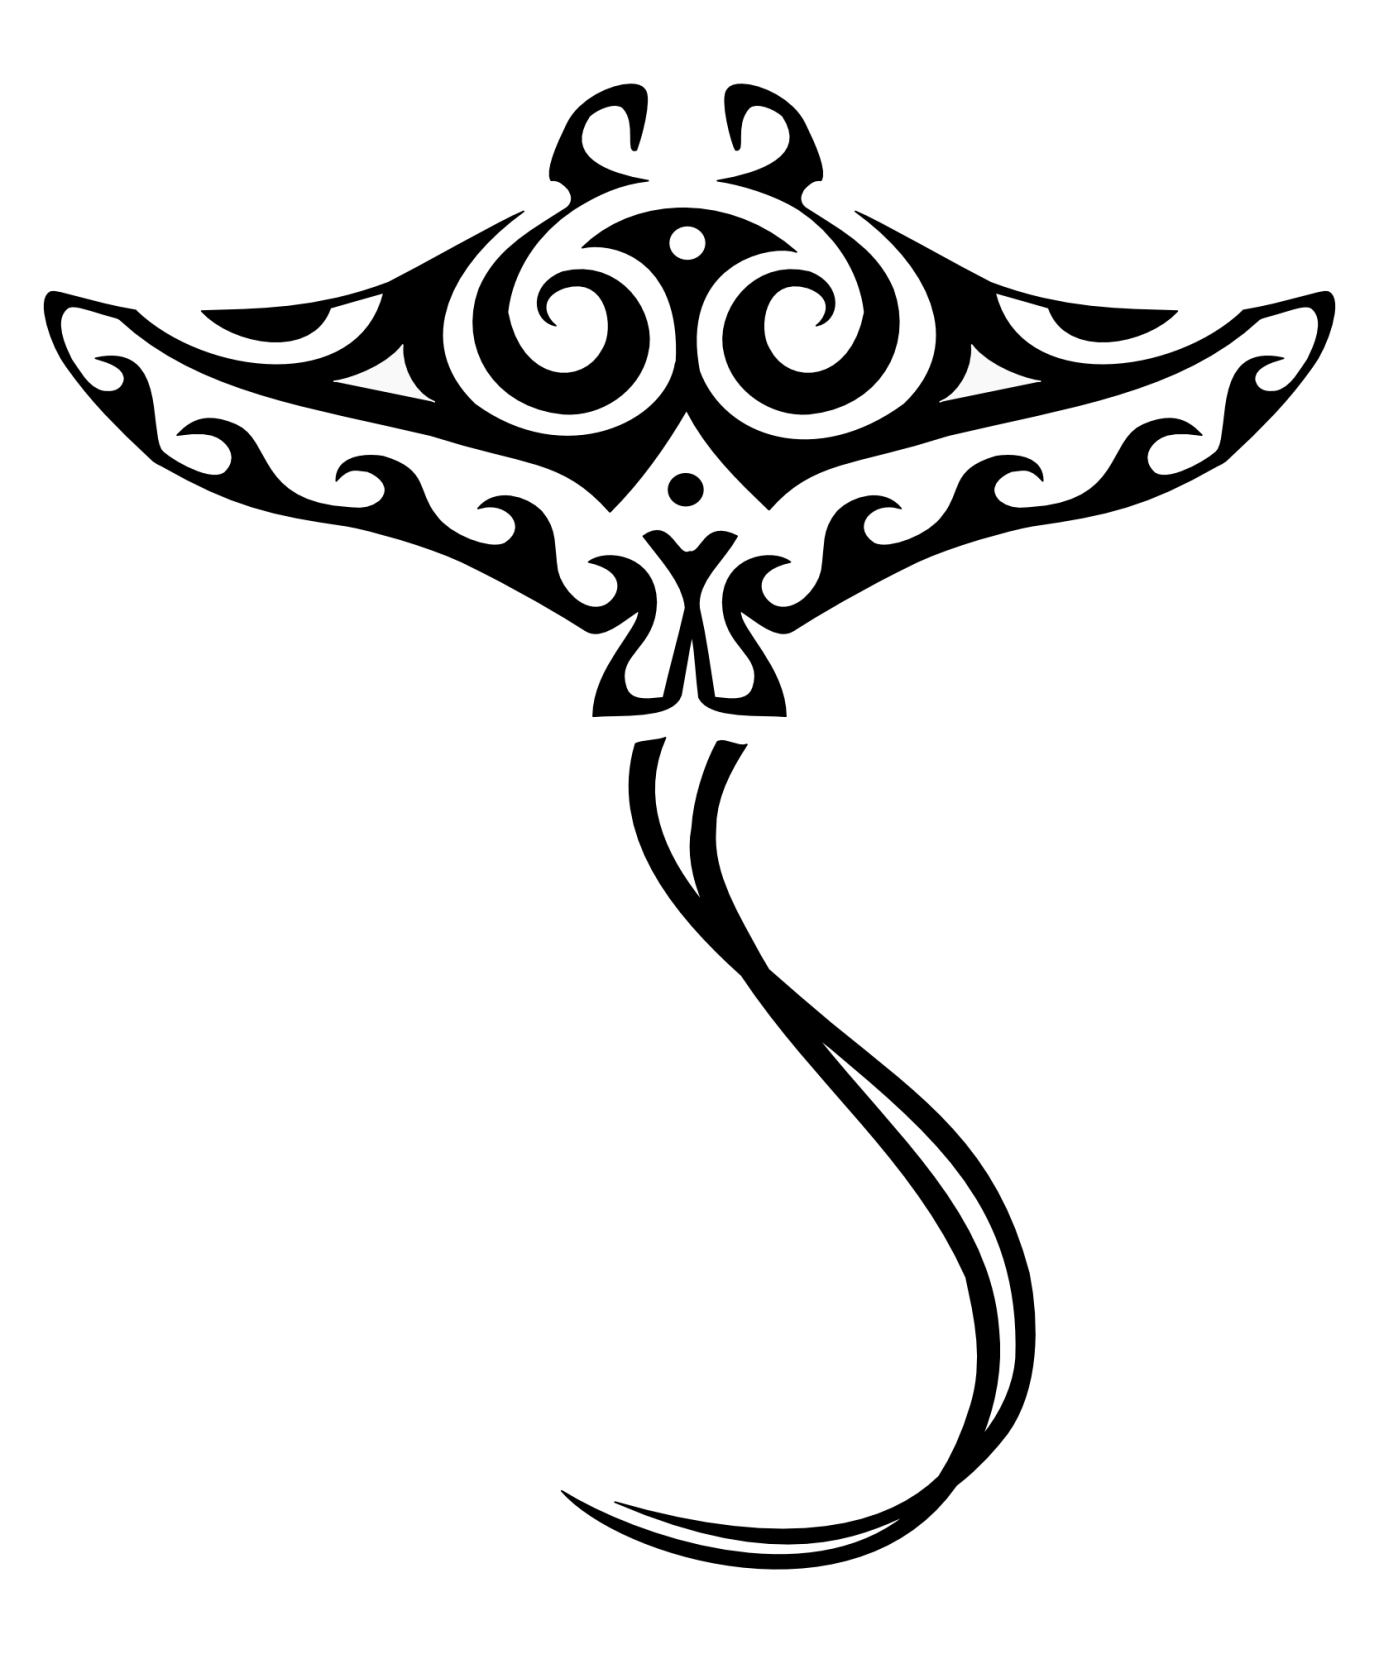 Tribal Stingray Tattoo - Tattoo Ideas and Designs | Tattoos.ai